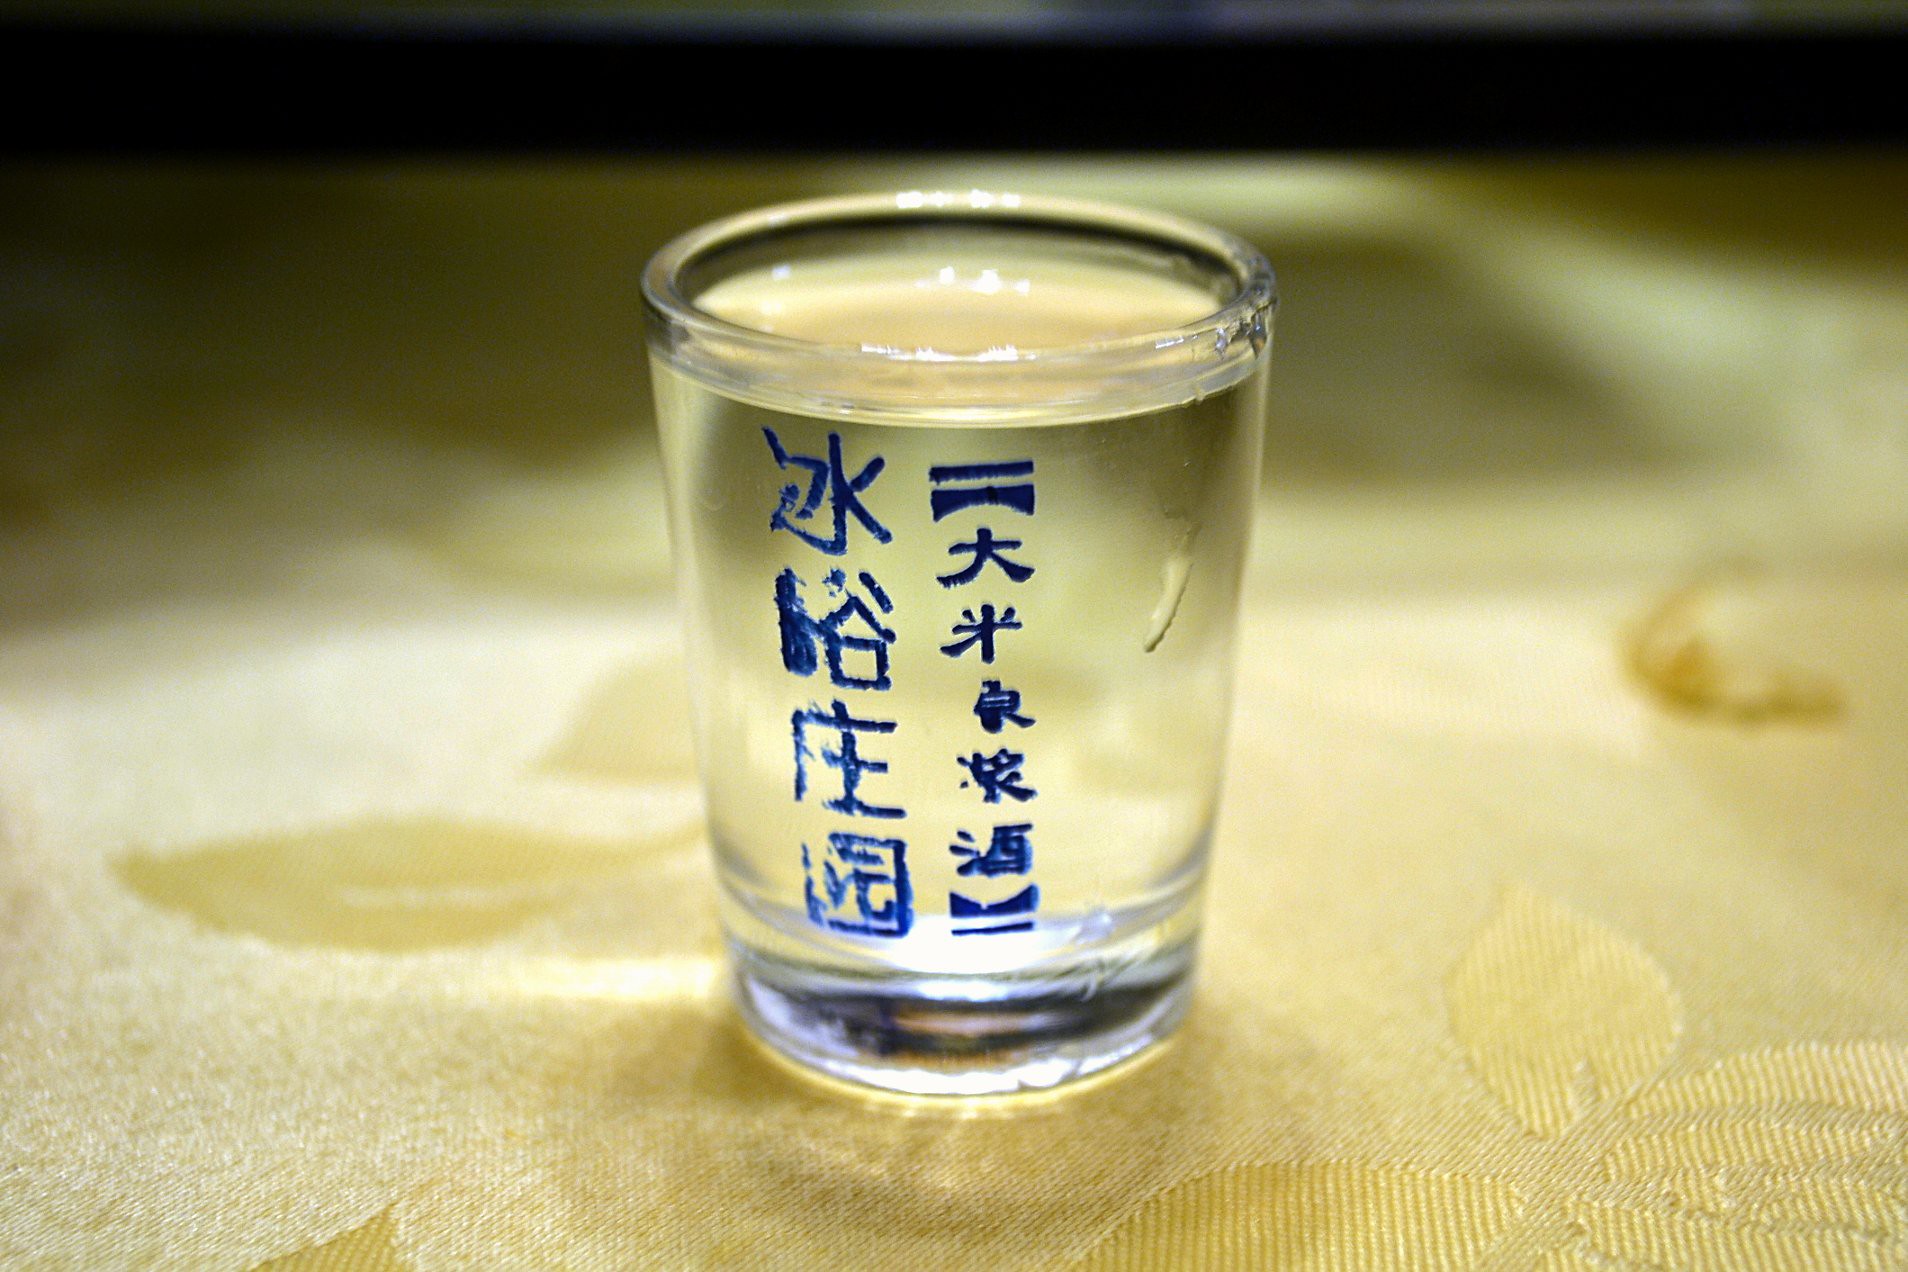 A glass of Baijiu.